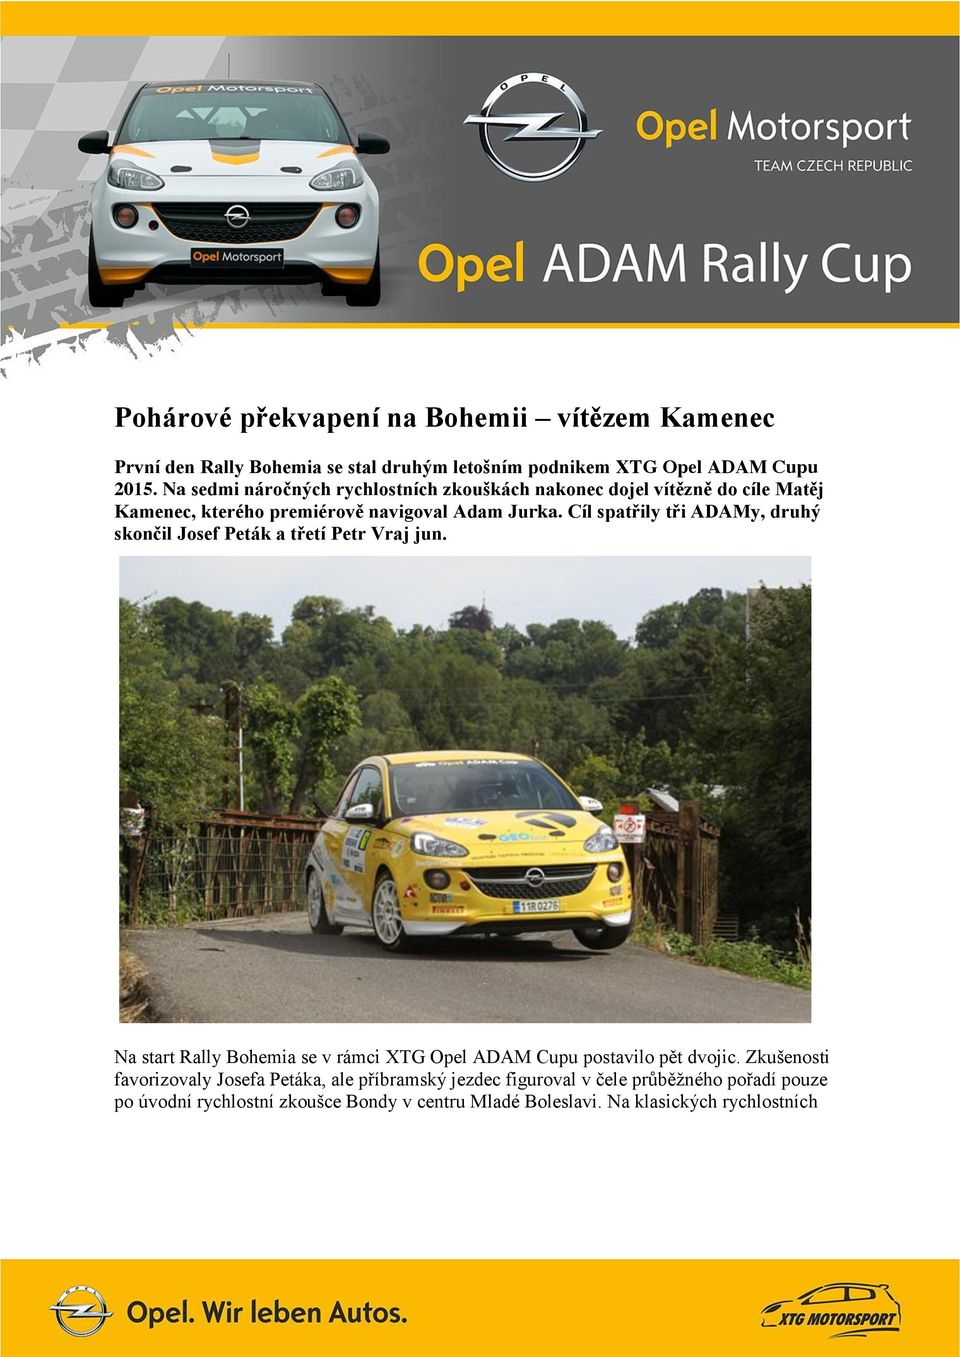 Cíl spatřily tři ADAMy, druhý skončil Josef Peták a třetí Petr Vraj jun. Na start Rally Bohemia se v rámci XTG Opel ADAM Cupu postavilo pět dvojic.